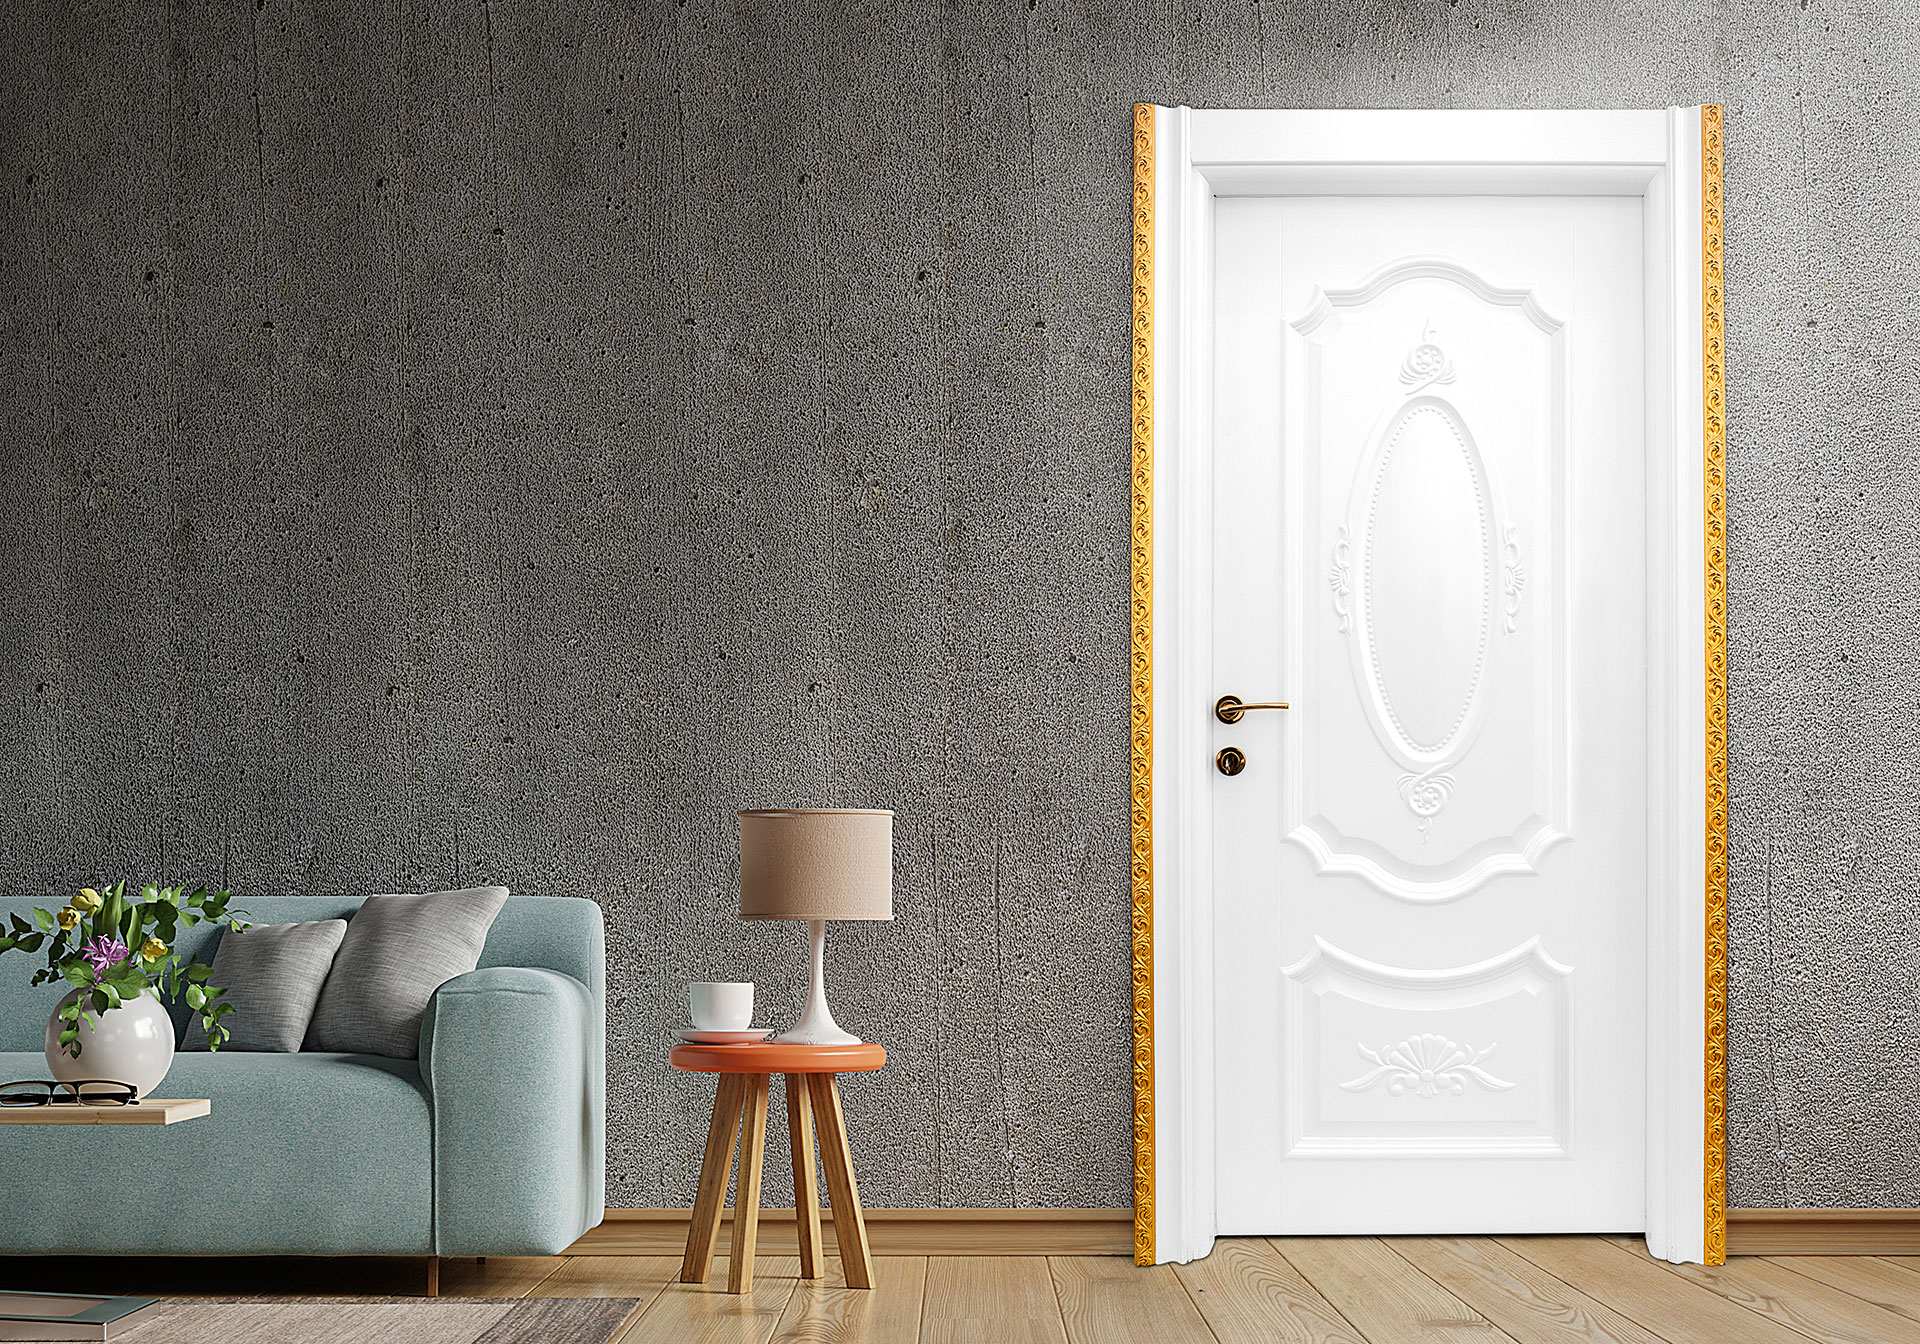 PVC Coated Door